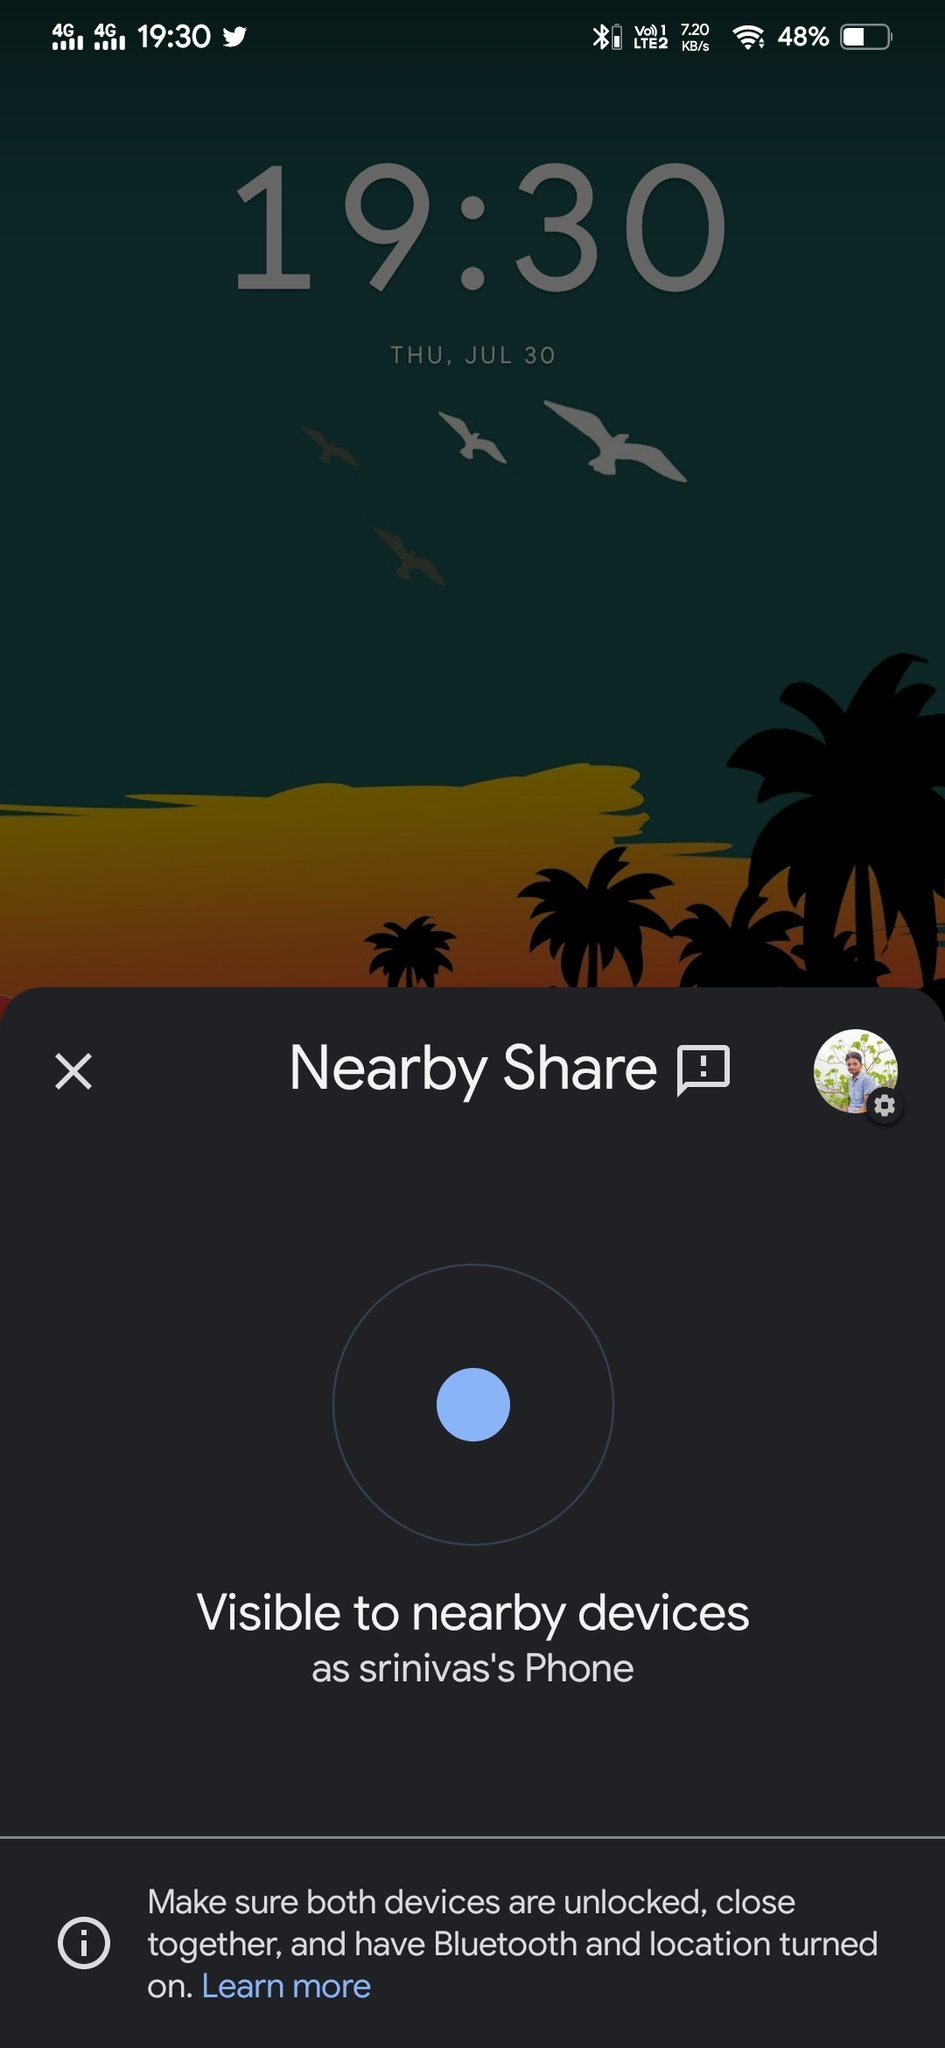 Comparteix a prop arriba a Chrome a Android i a l'escriptori